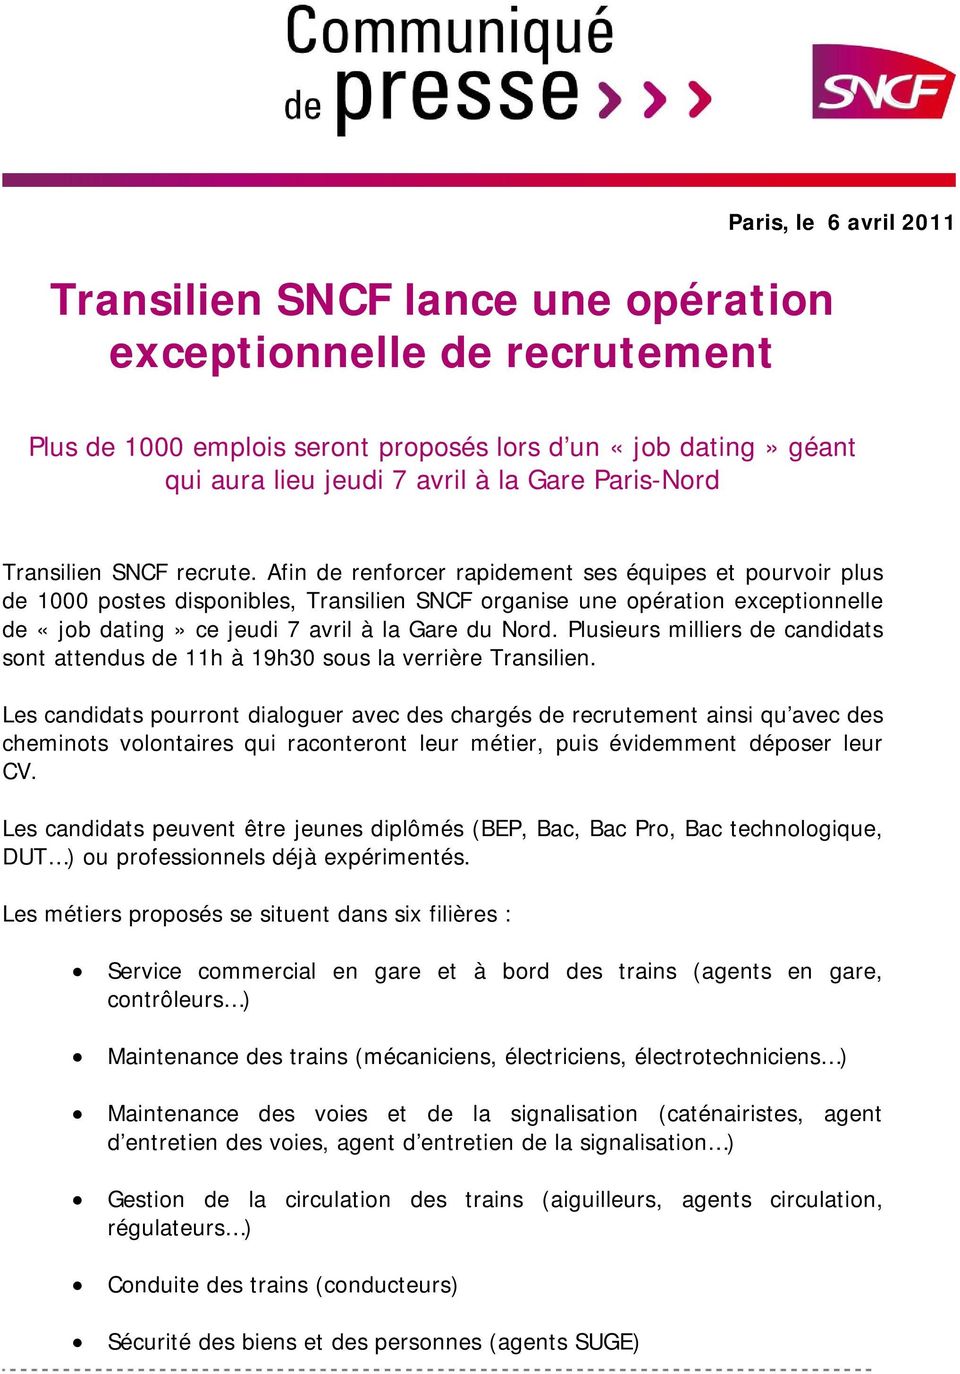 Afin de renforcer rapidement ses équipes et pourvoir plus de 1000 postes disponibles, Transilien SNCF organise une opération exceptionnelle de «job dating» ce jeudi 7 avril à la Gare du Nord.